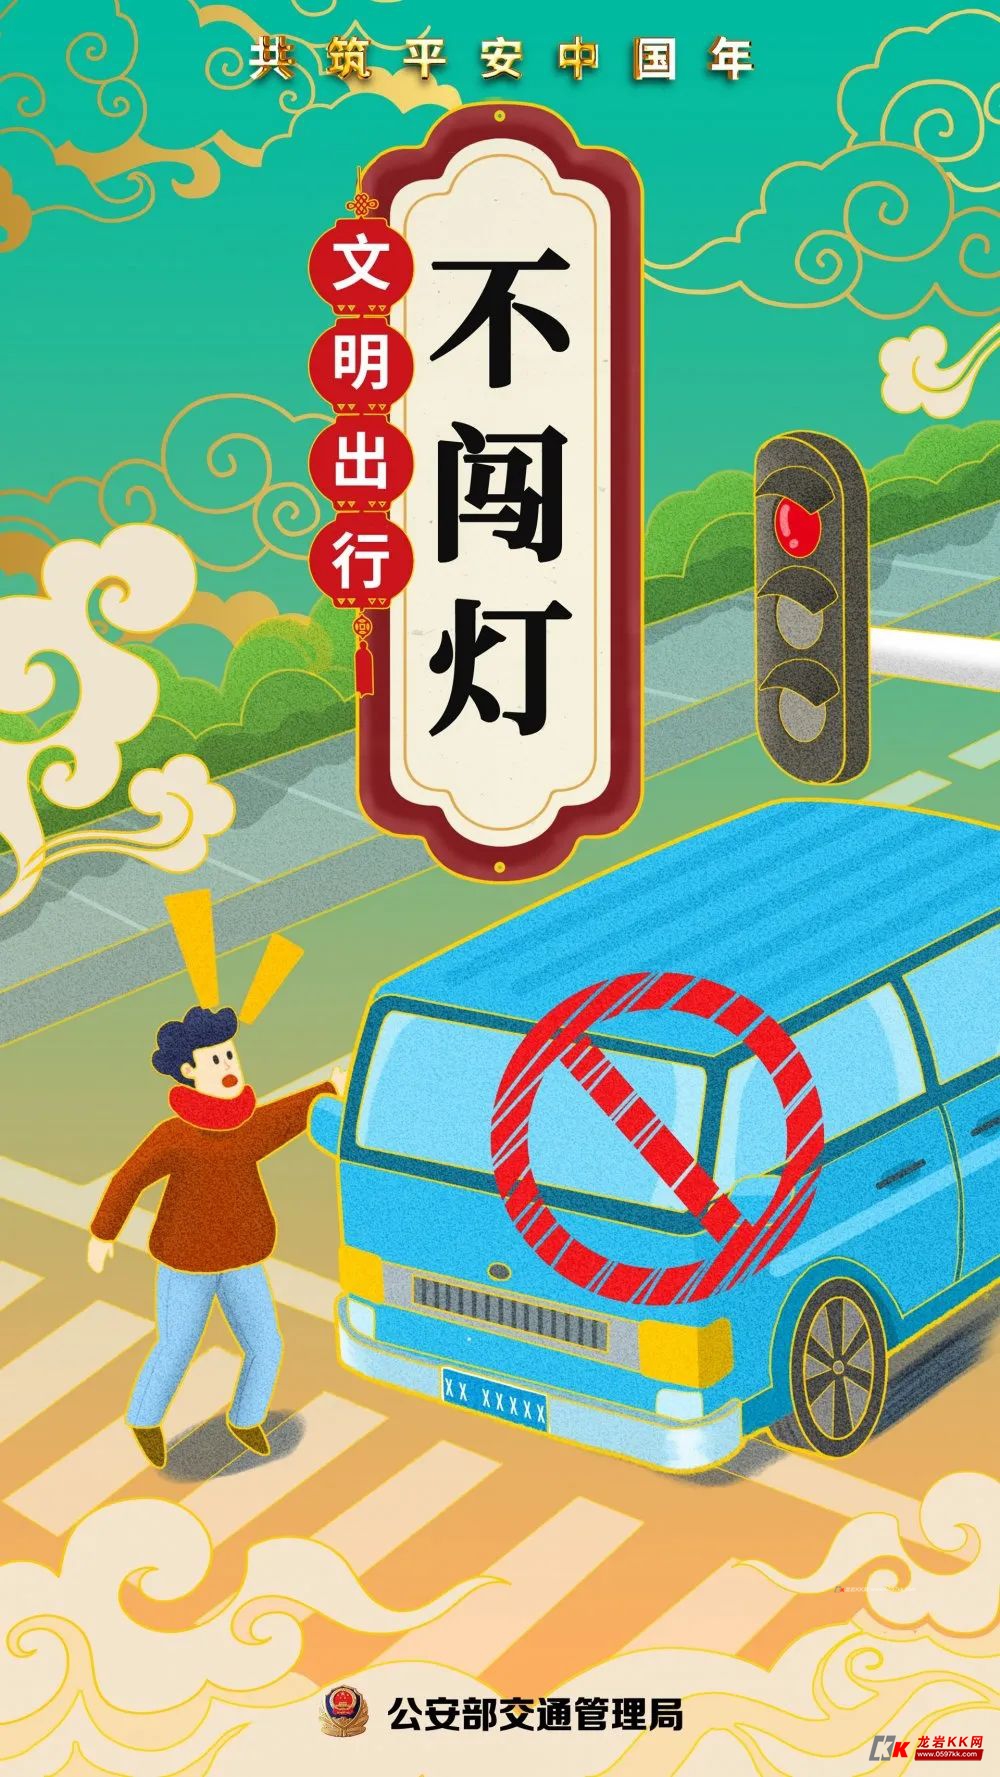 春节交通安全温馨提示图片